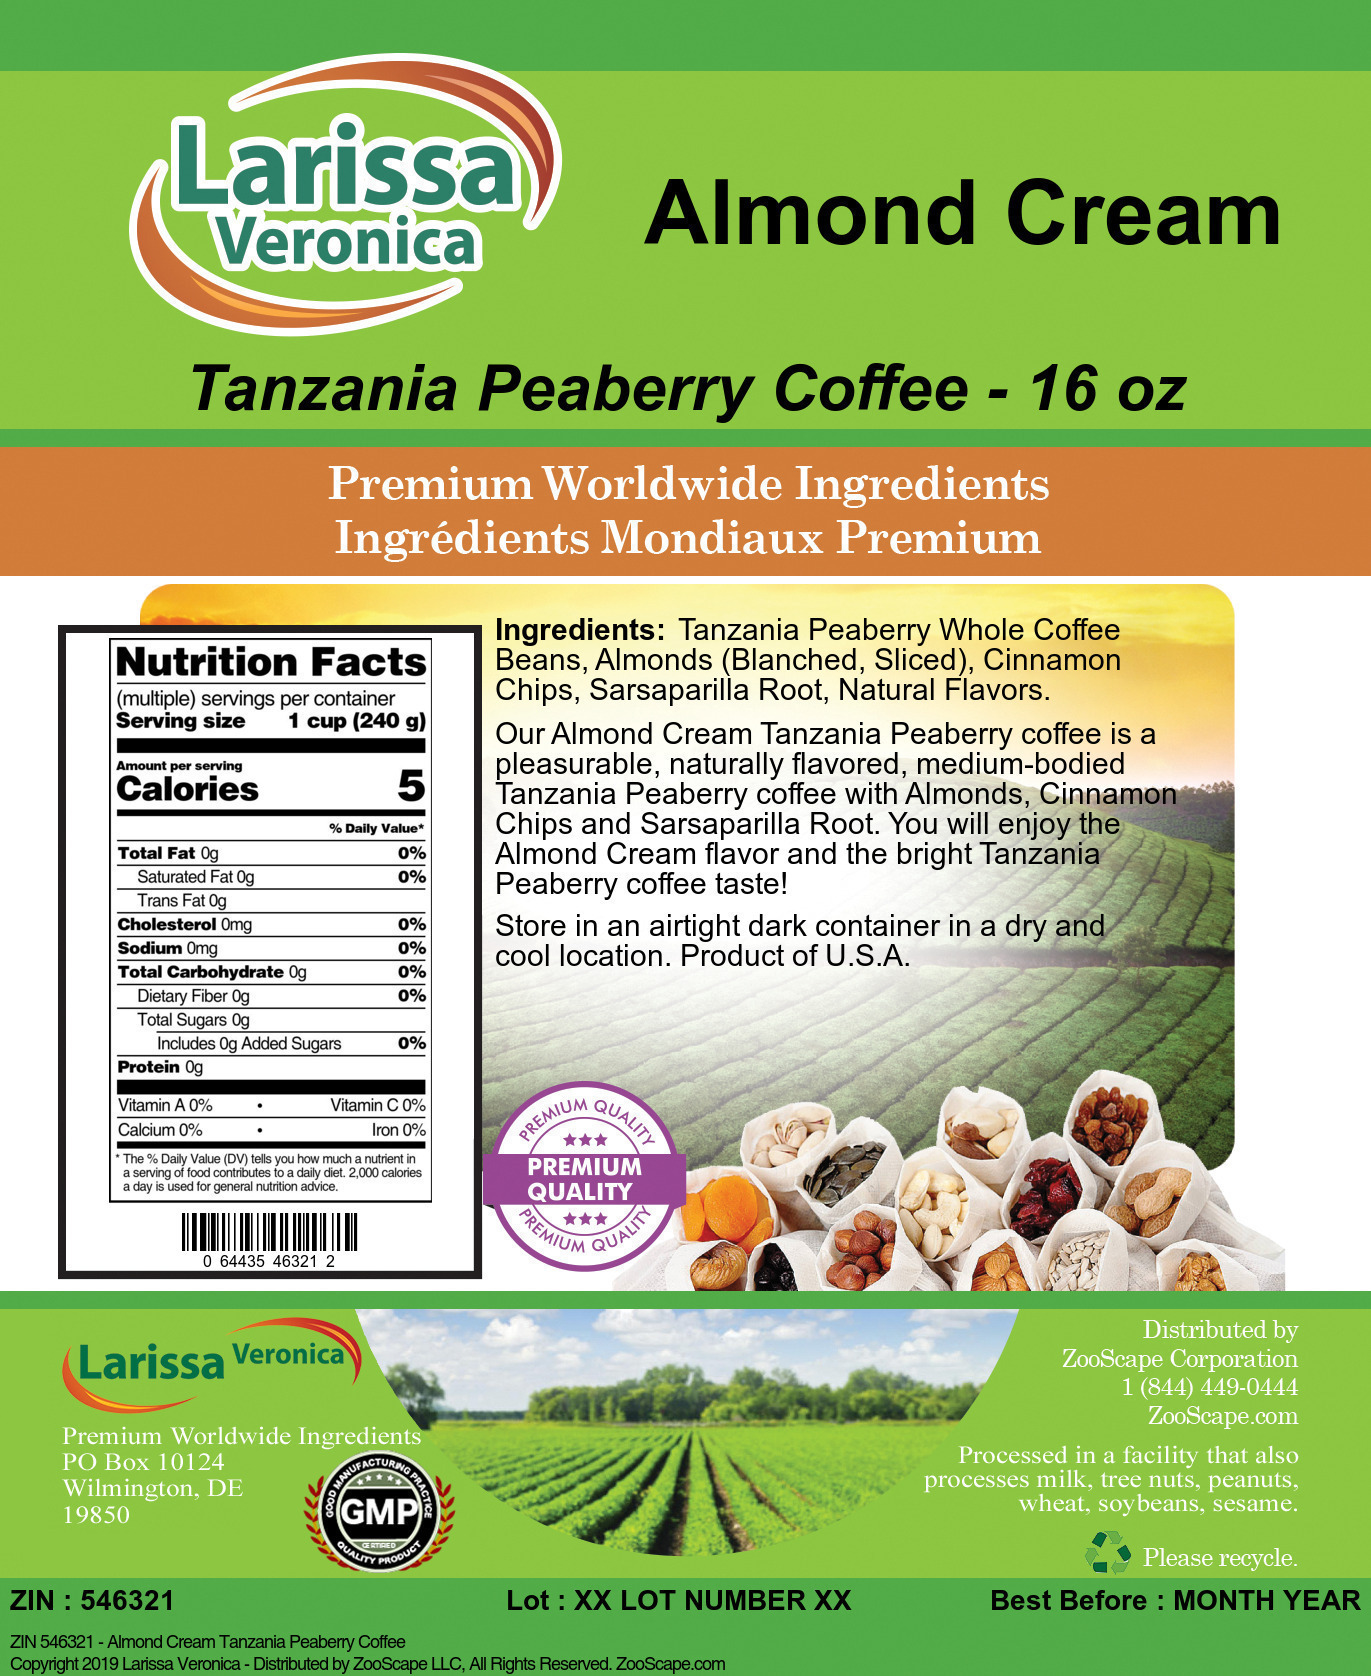 Almond Cream Tanzania Peaberry Coffee - Label